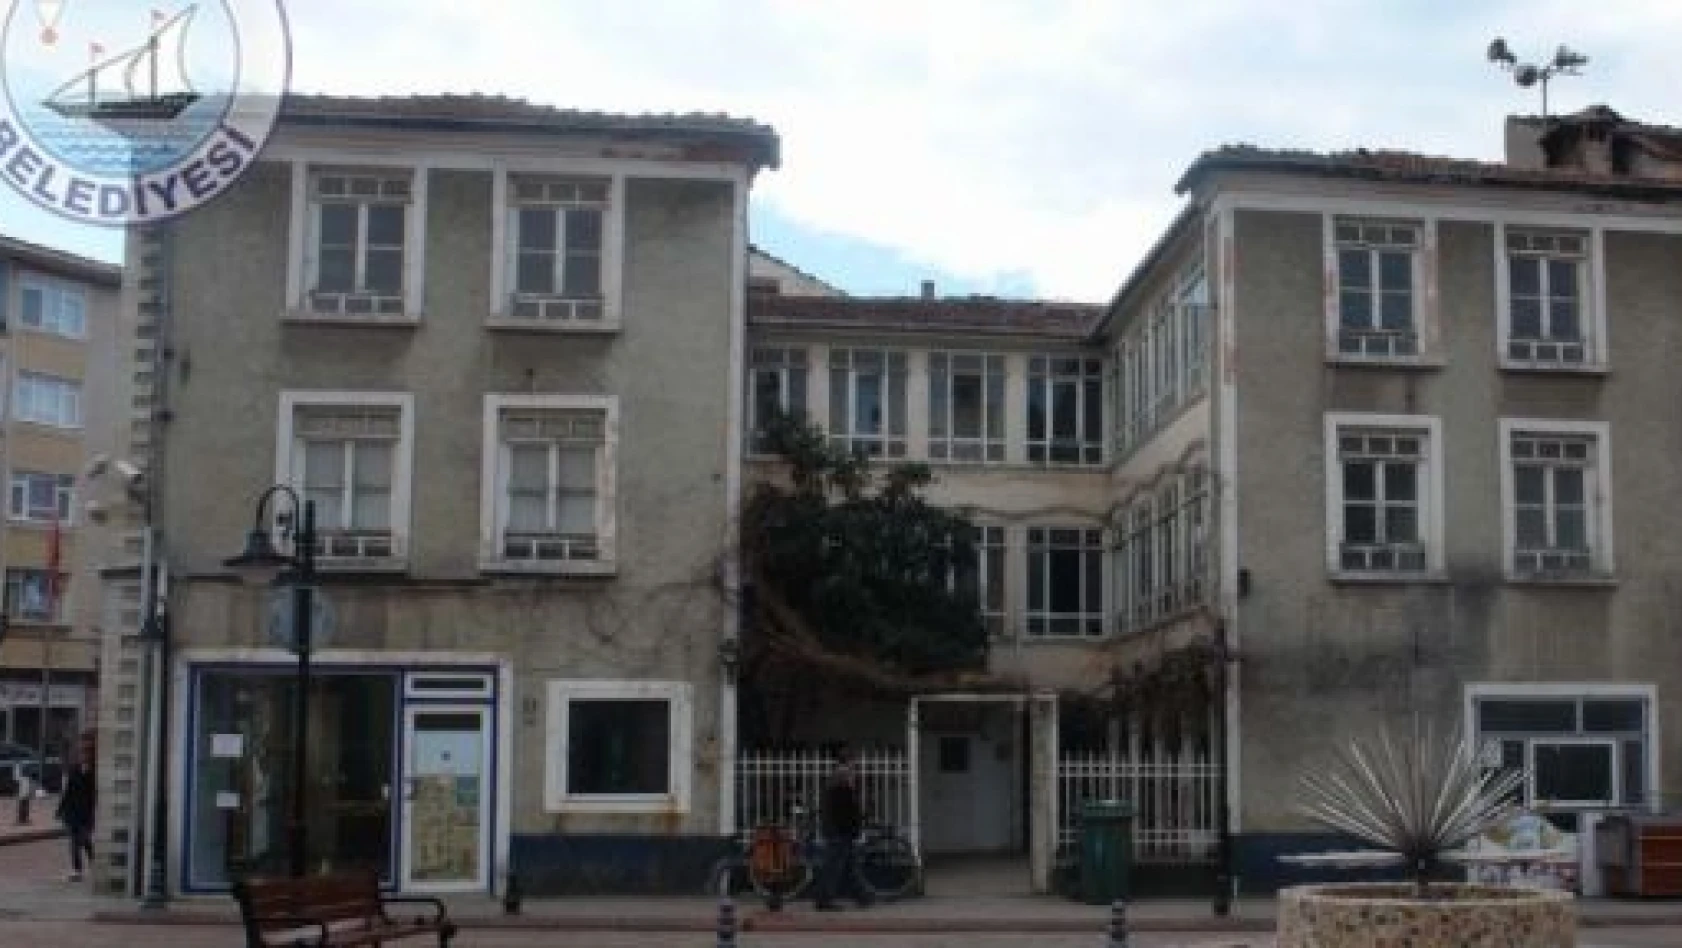 İnebolu'nun tarihî belediye binası turizme kazandırılacak